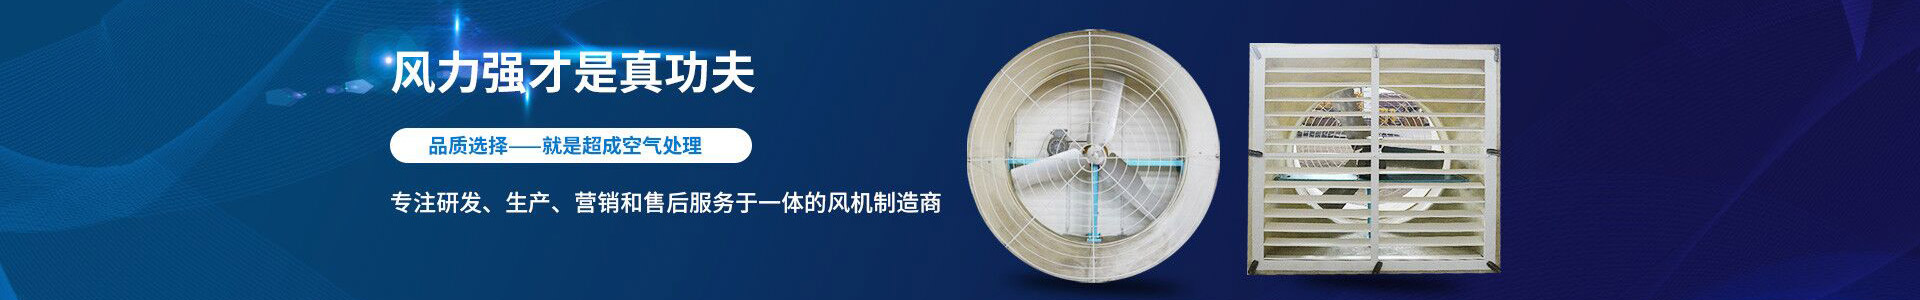 在线留言-江阴市超成空气处理设备有限公司